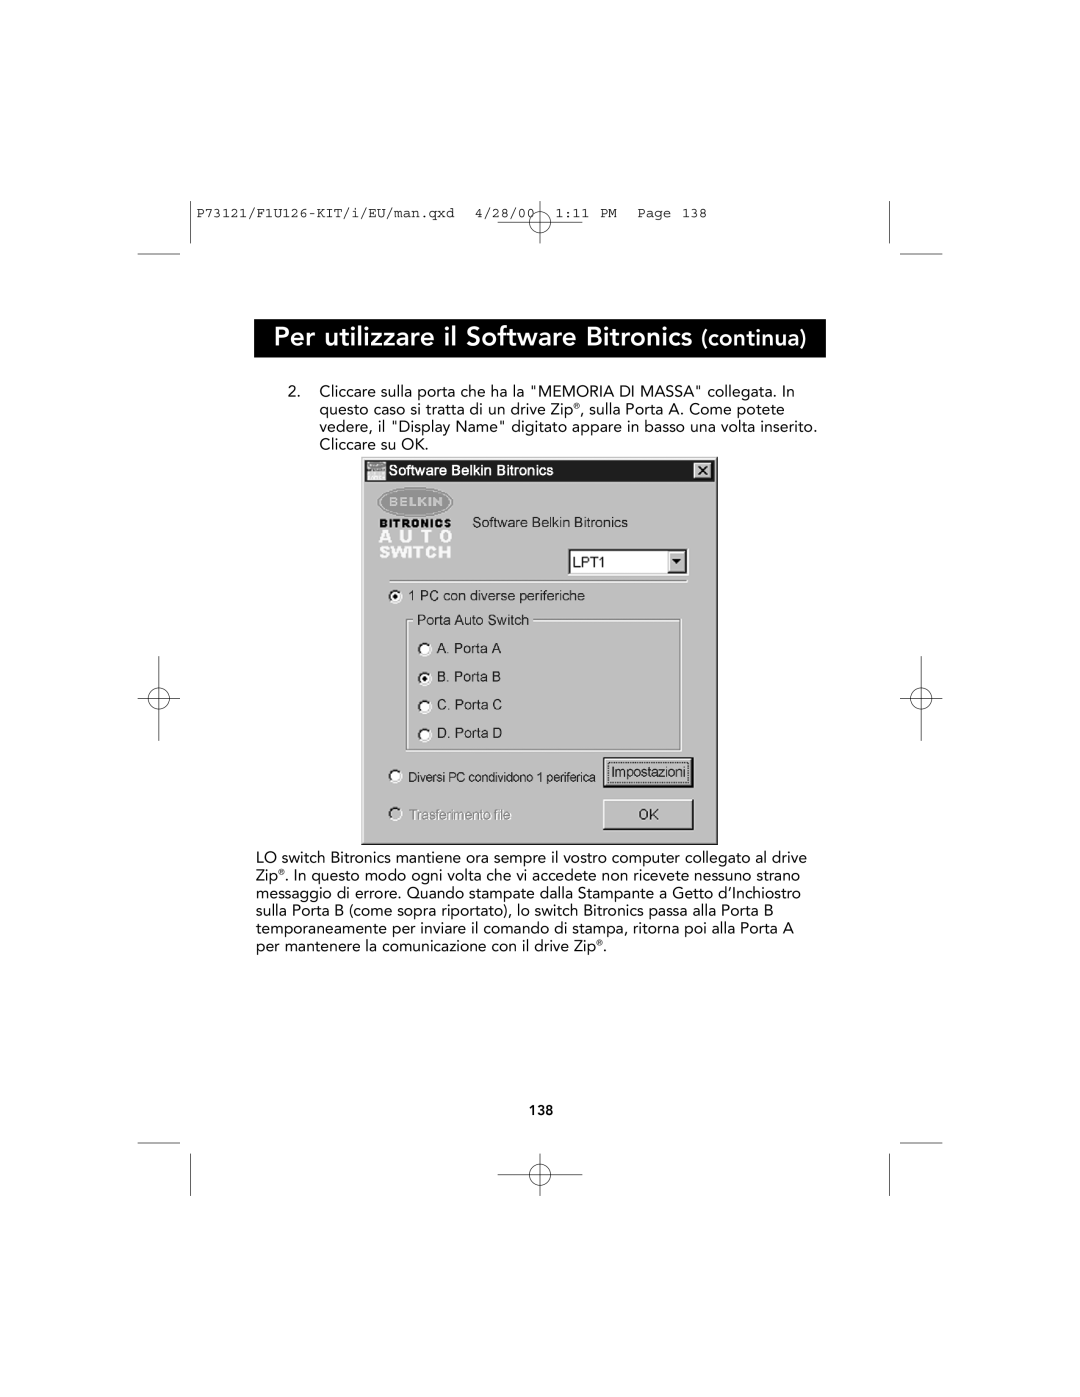 Belkin P73121, F1U126-KIT user manual Per utilizzare il Software Bitronics continua 